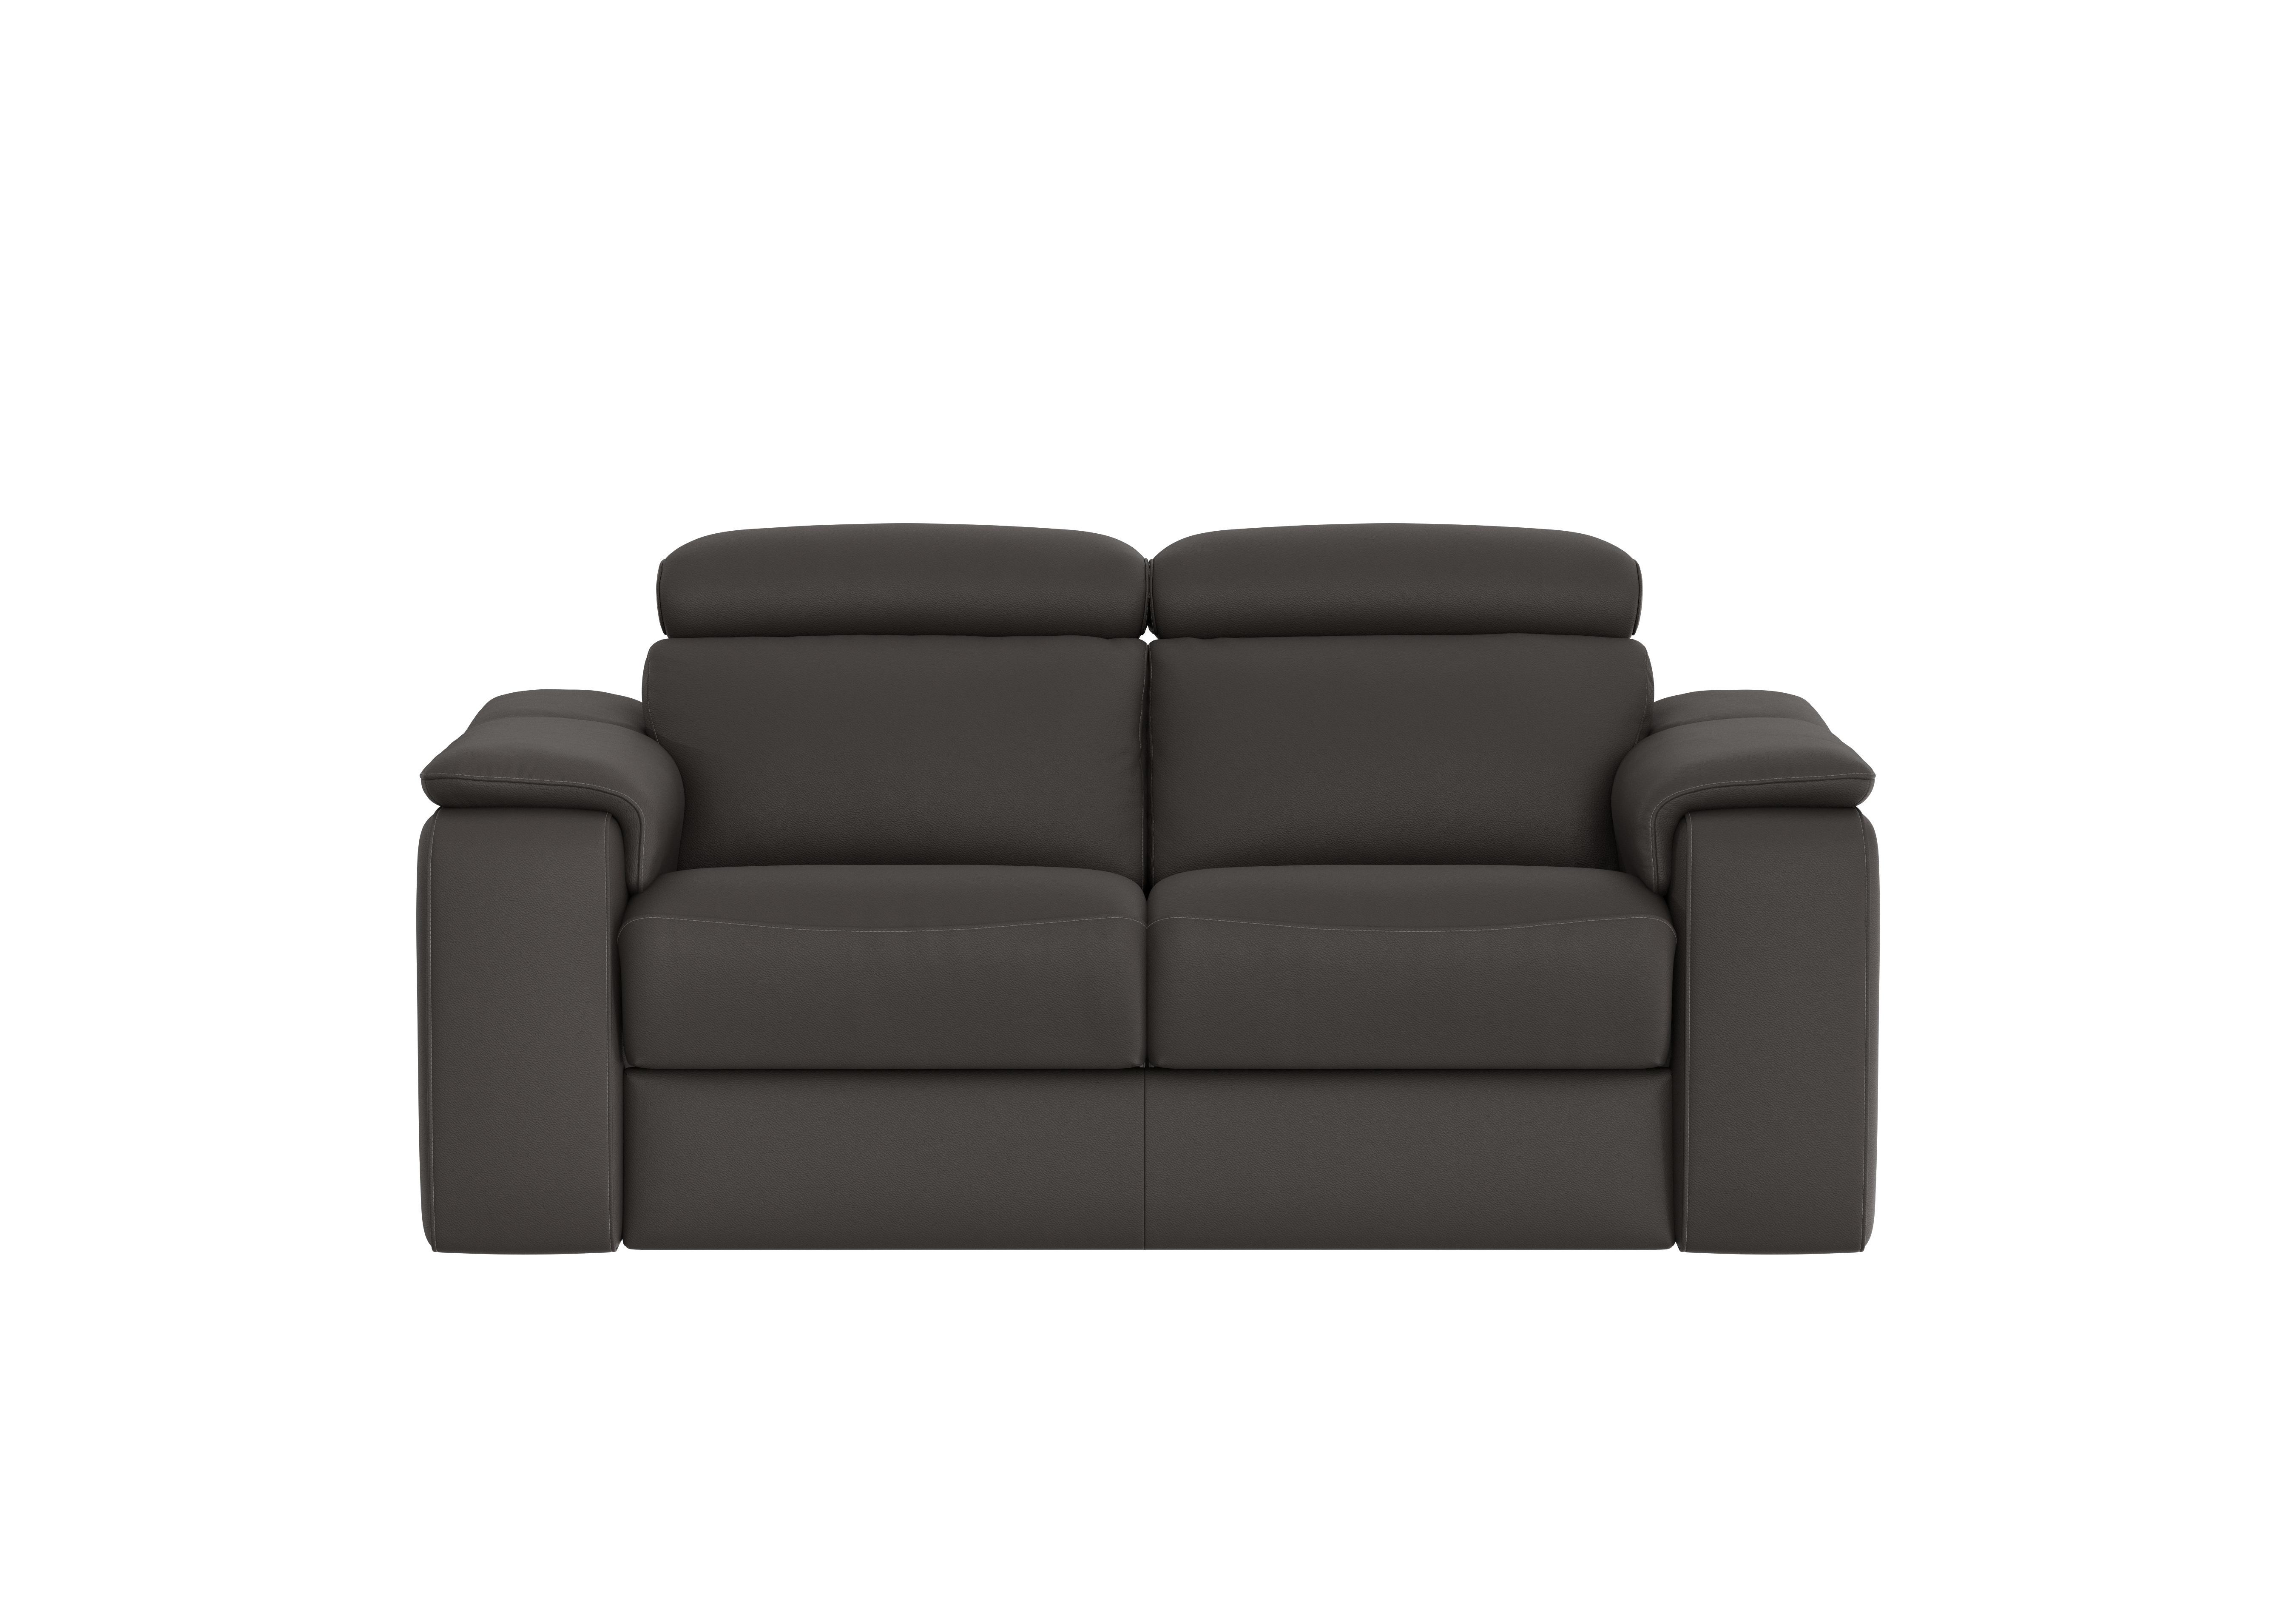 Davide 2 Seater Leather Sofa in 327 Torello Grigio Scuro on Furniture Village